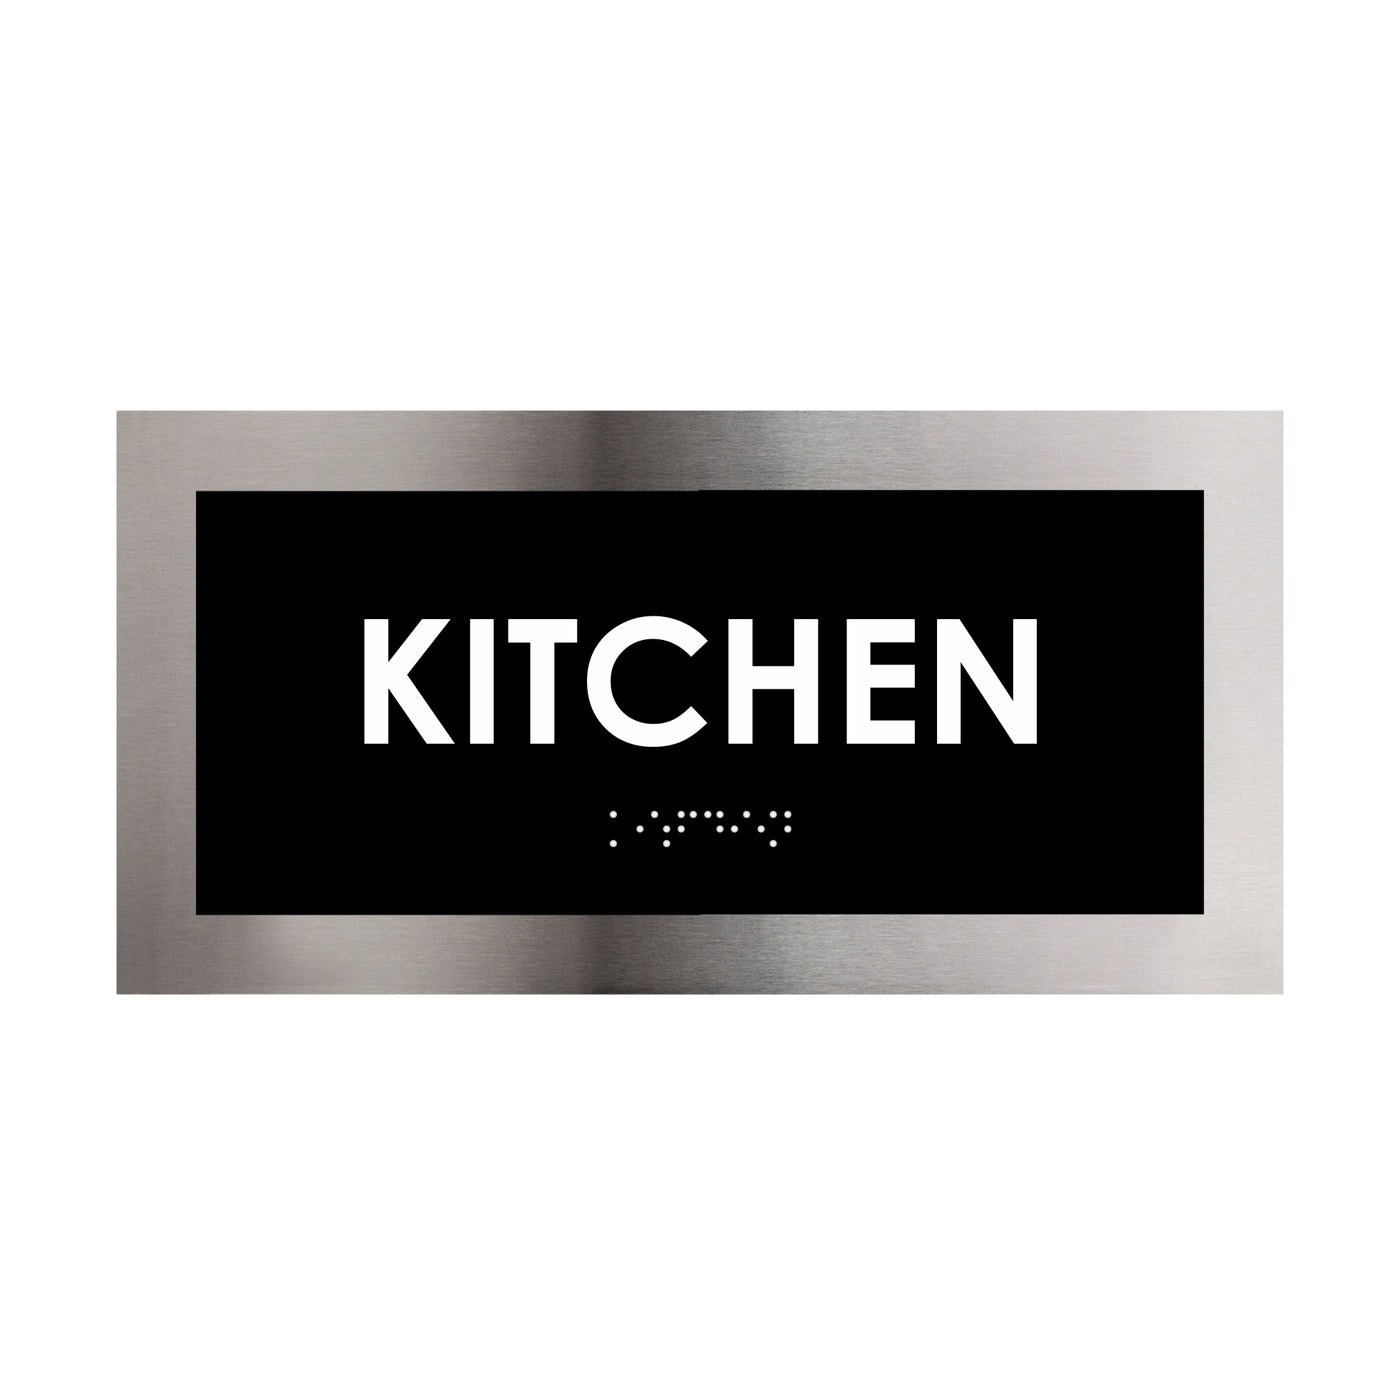 Stainless Steel Kitchen Door Plate "Modern" Design